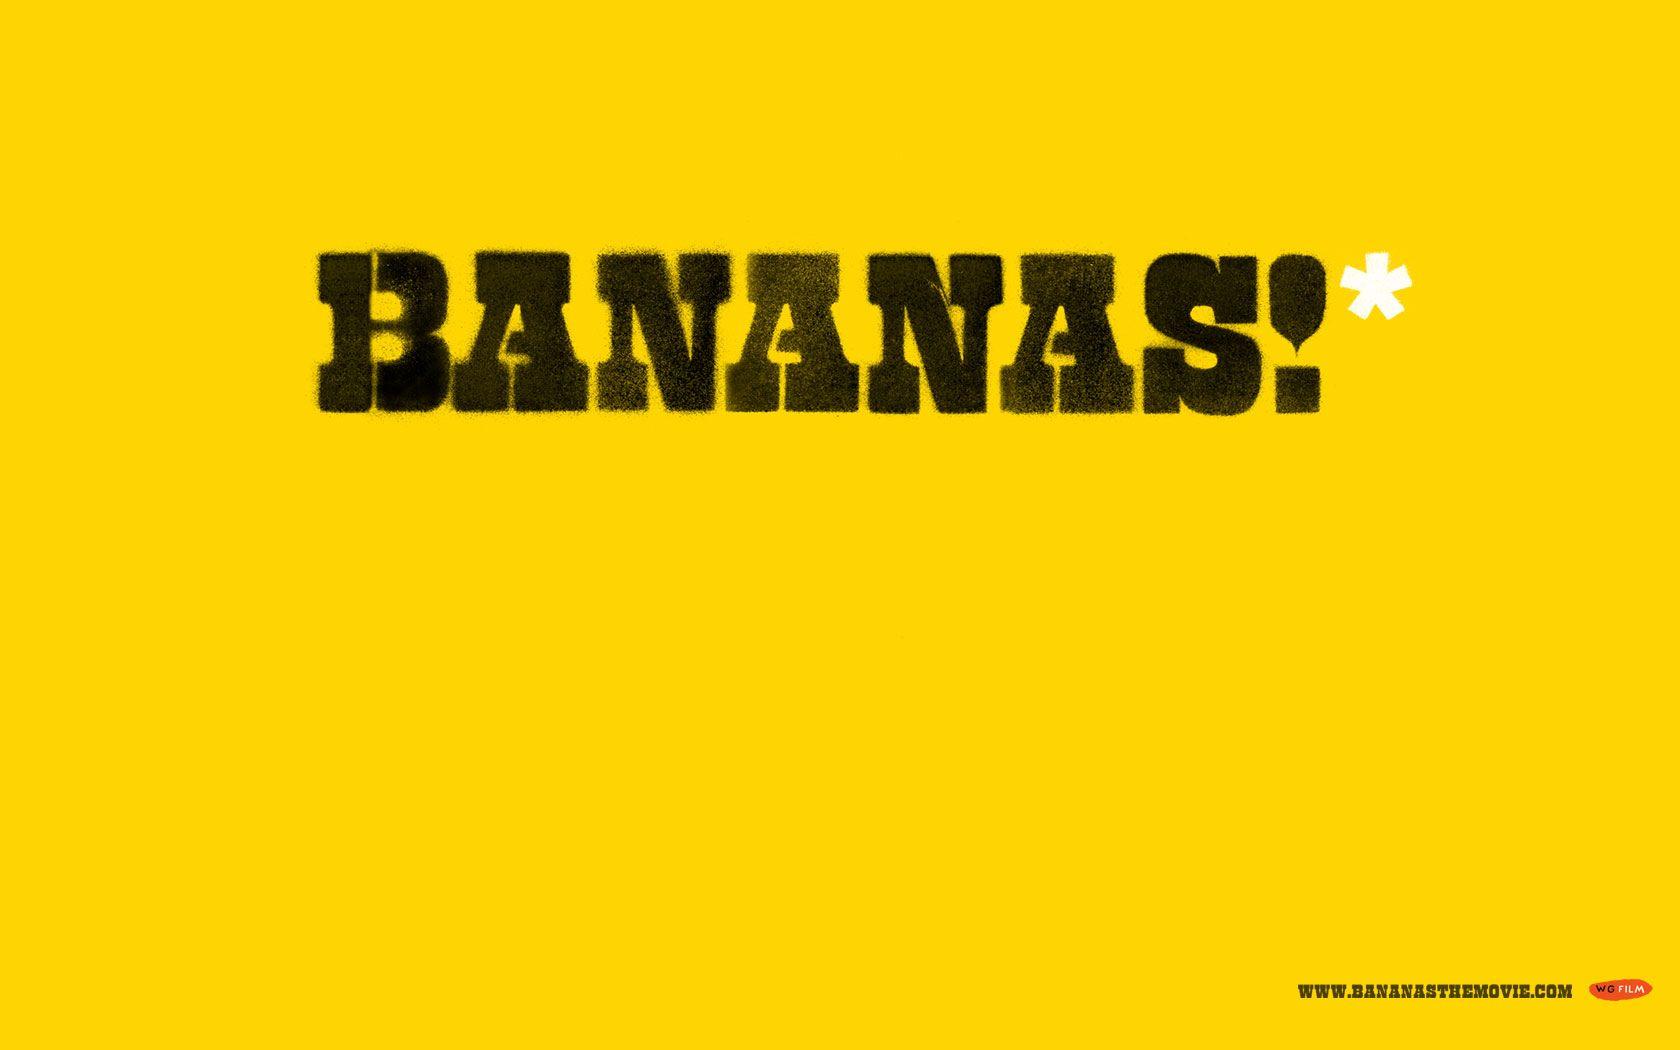 Bananas!* wallpaper. BANANAS!*